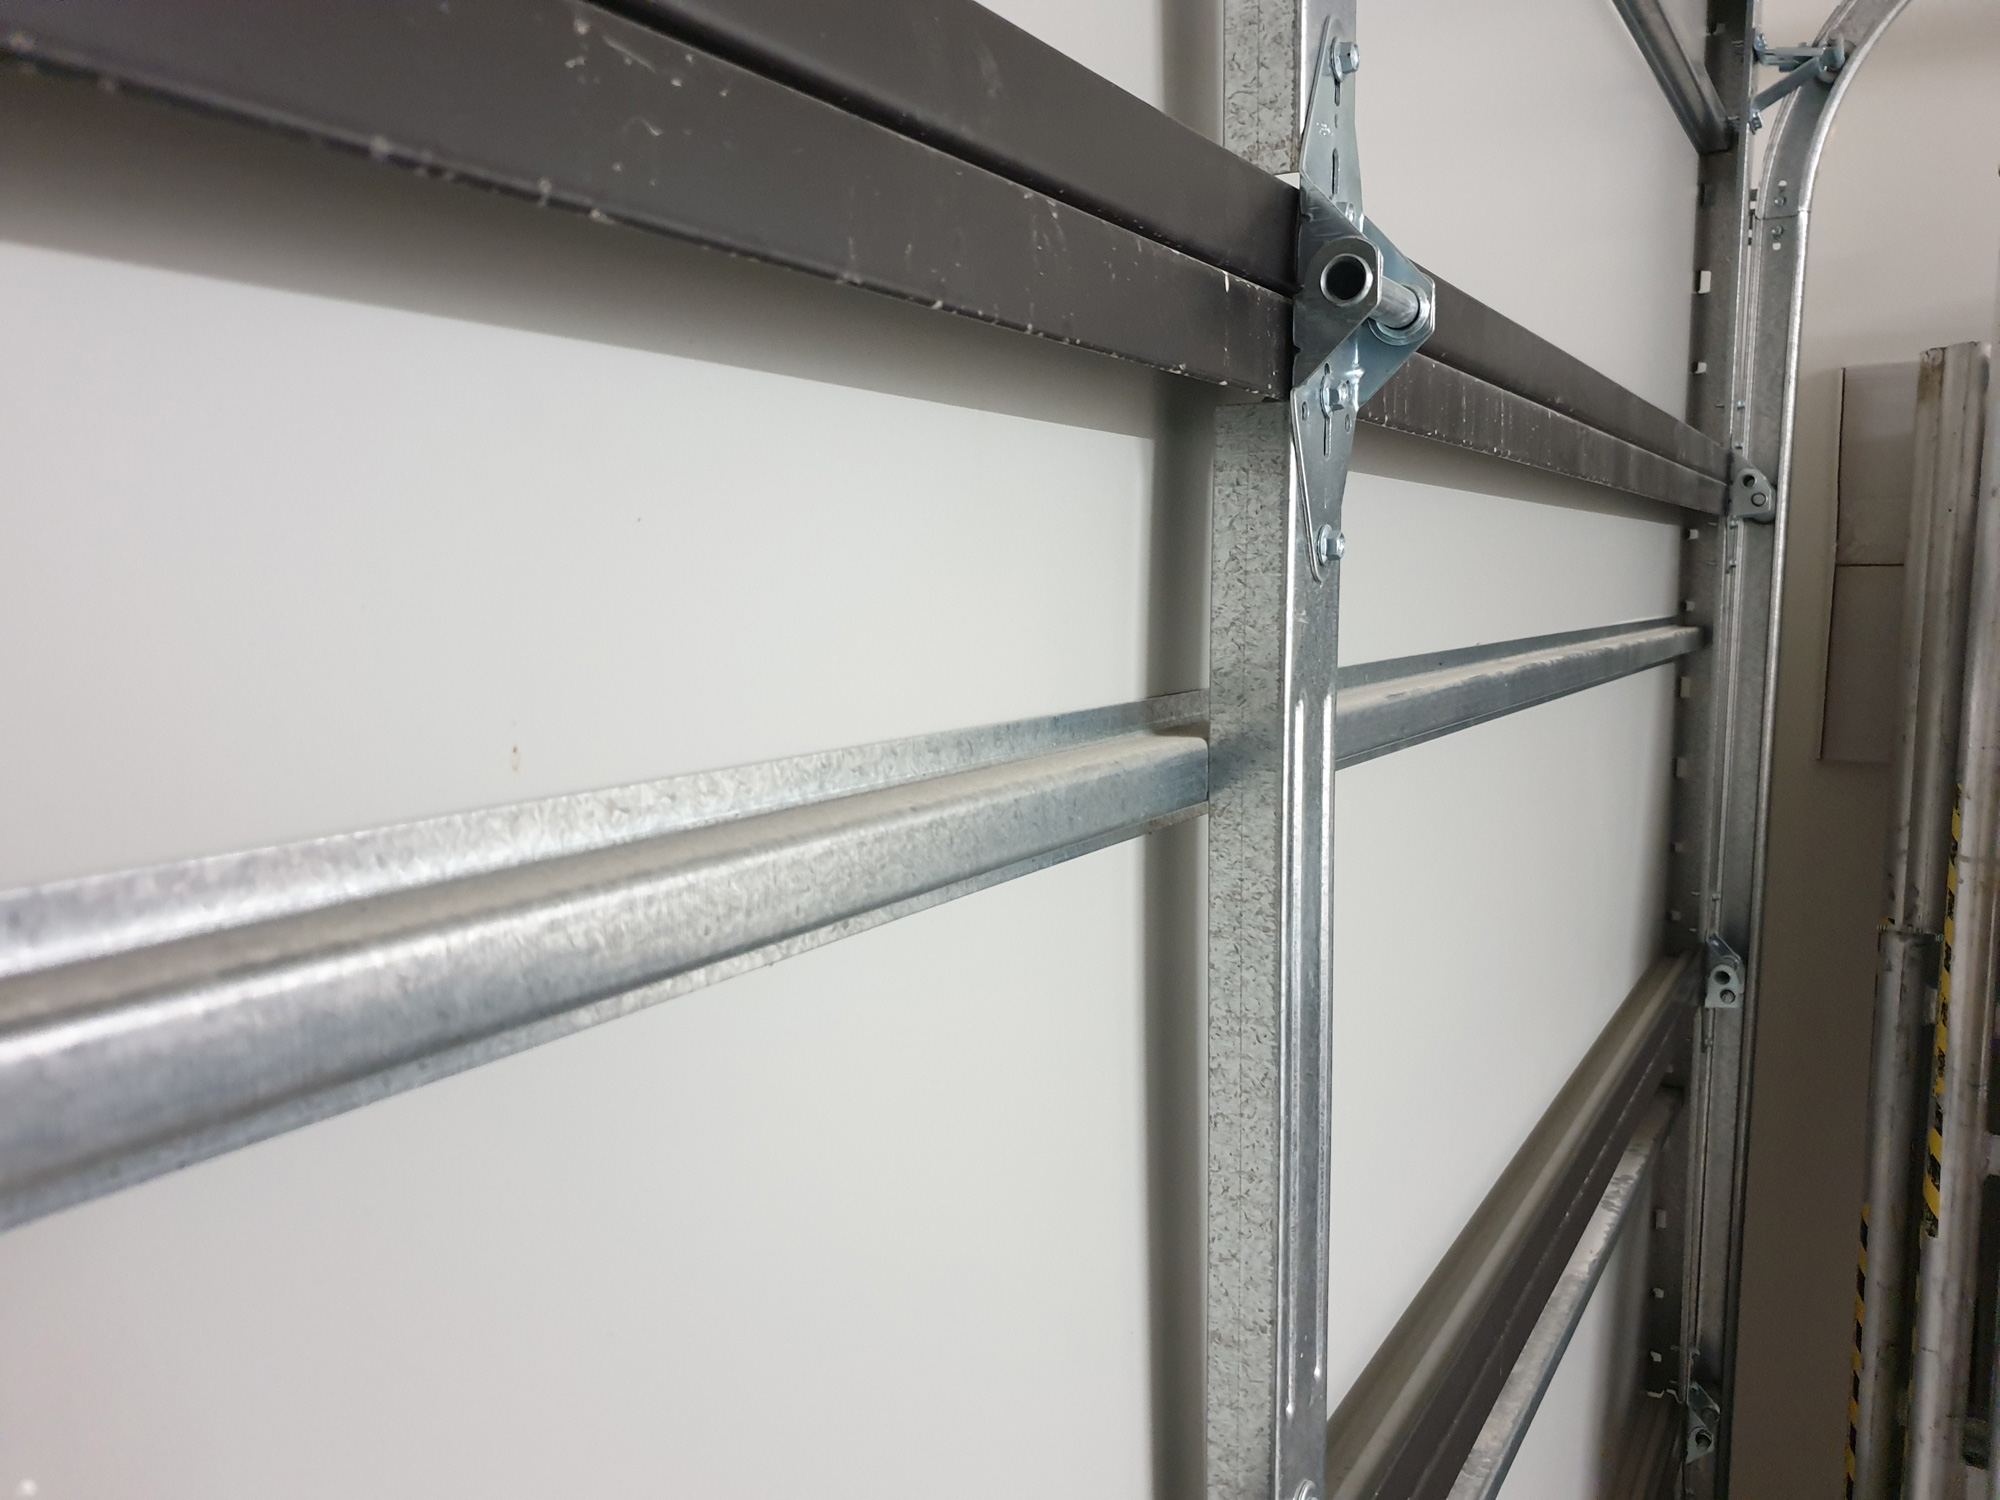 Steel horizontal strengthener bars within door panel